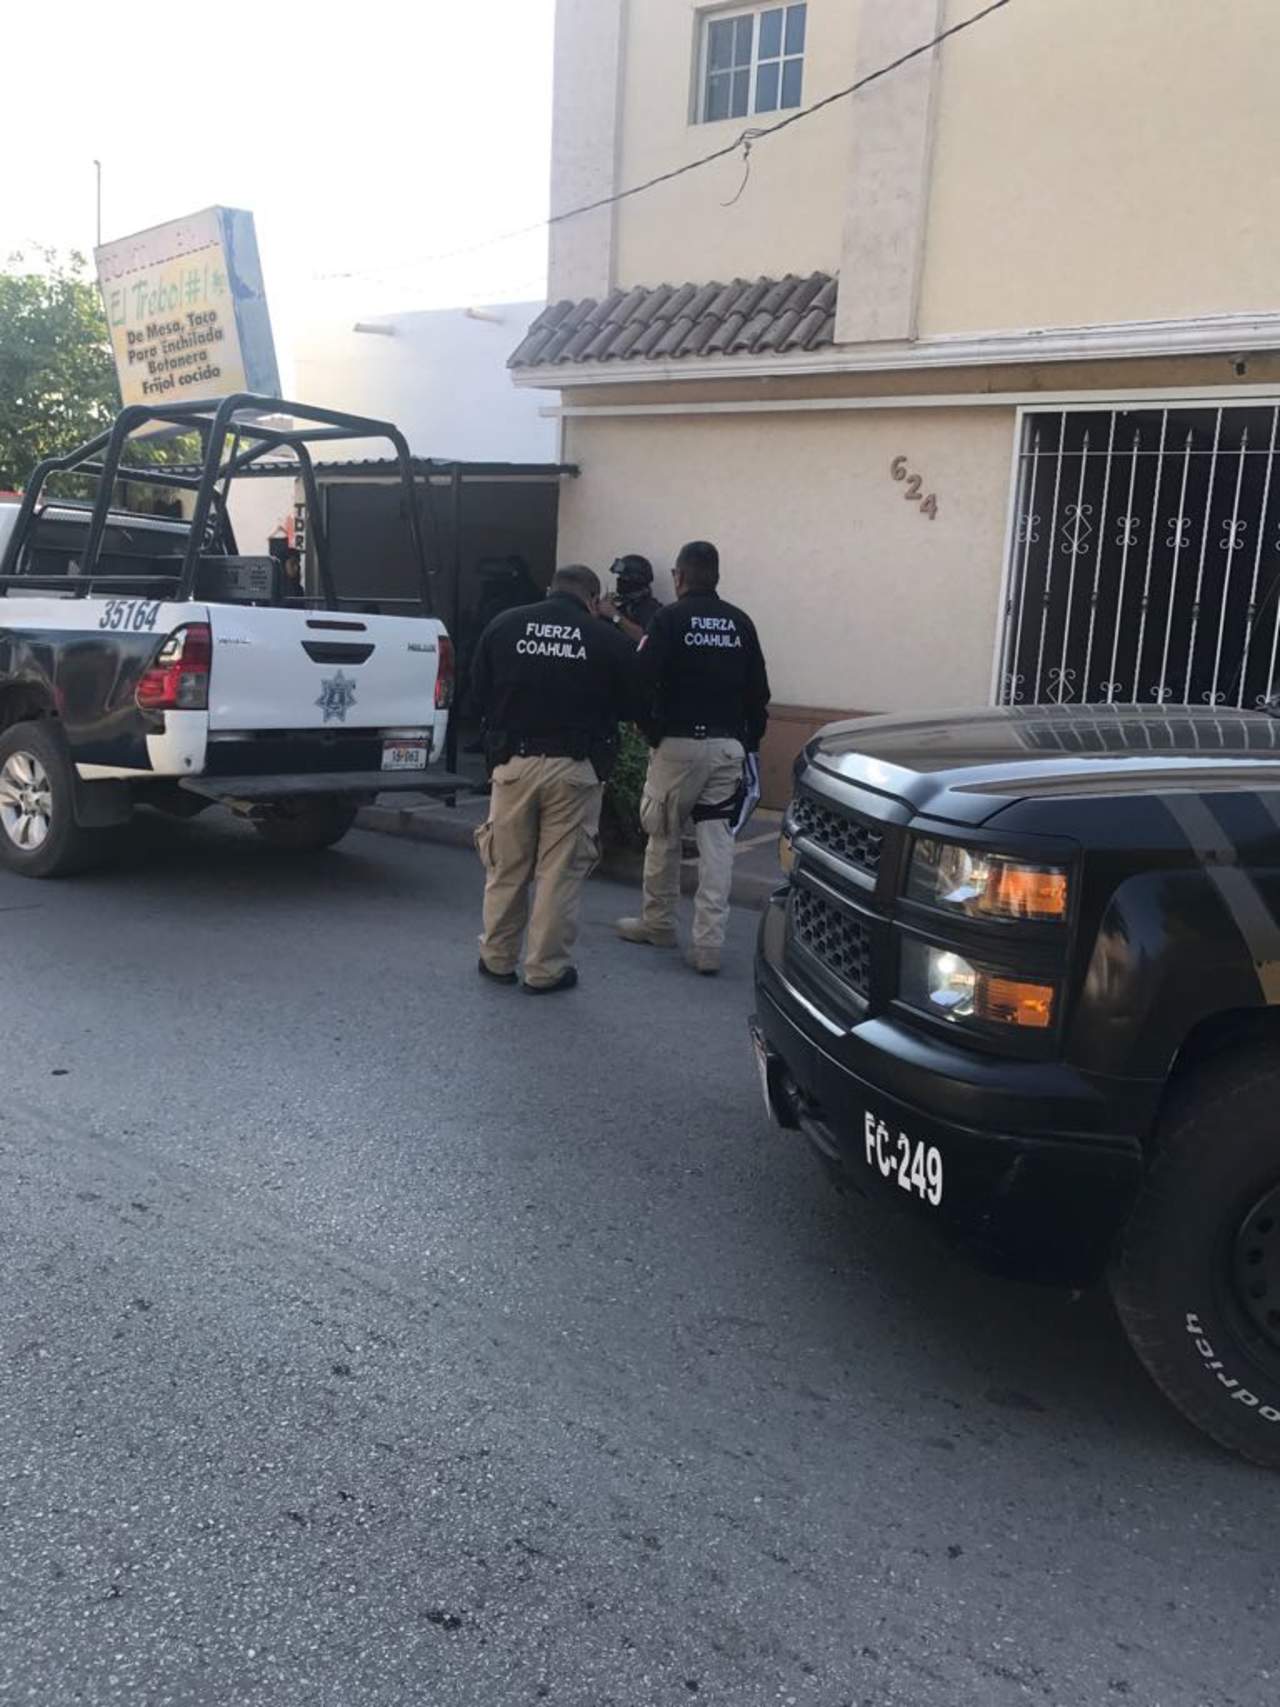 Al lugar acudieron elementos de la Policía Municipal y Fuerza Coahuila, quienes tomaron conocimiento del robo e indicaron a la parte afectada la forma de proceder. (EL SIGLO DE TORREÓN)